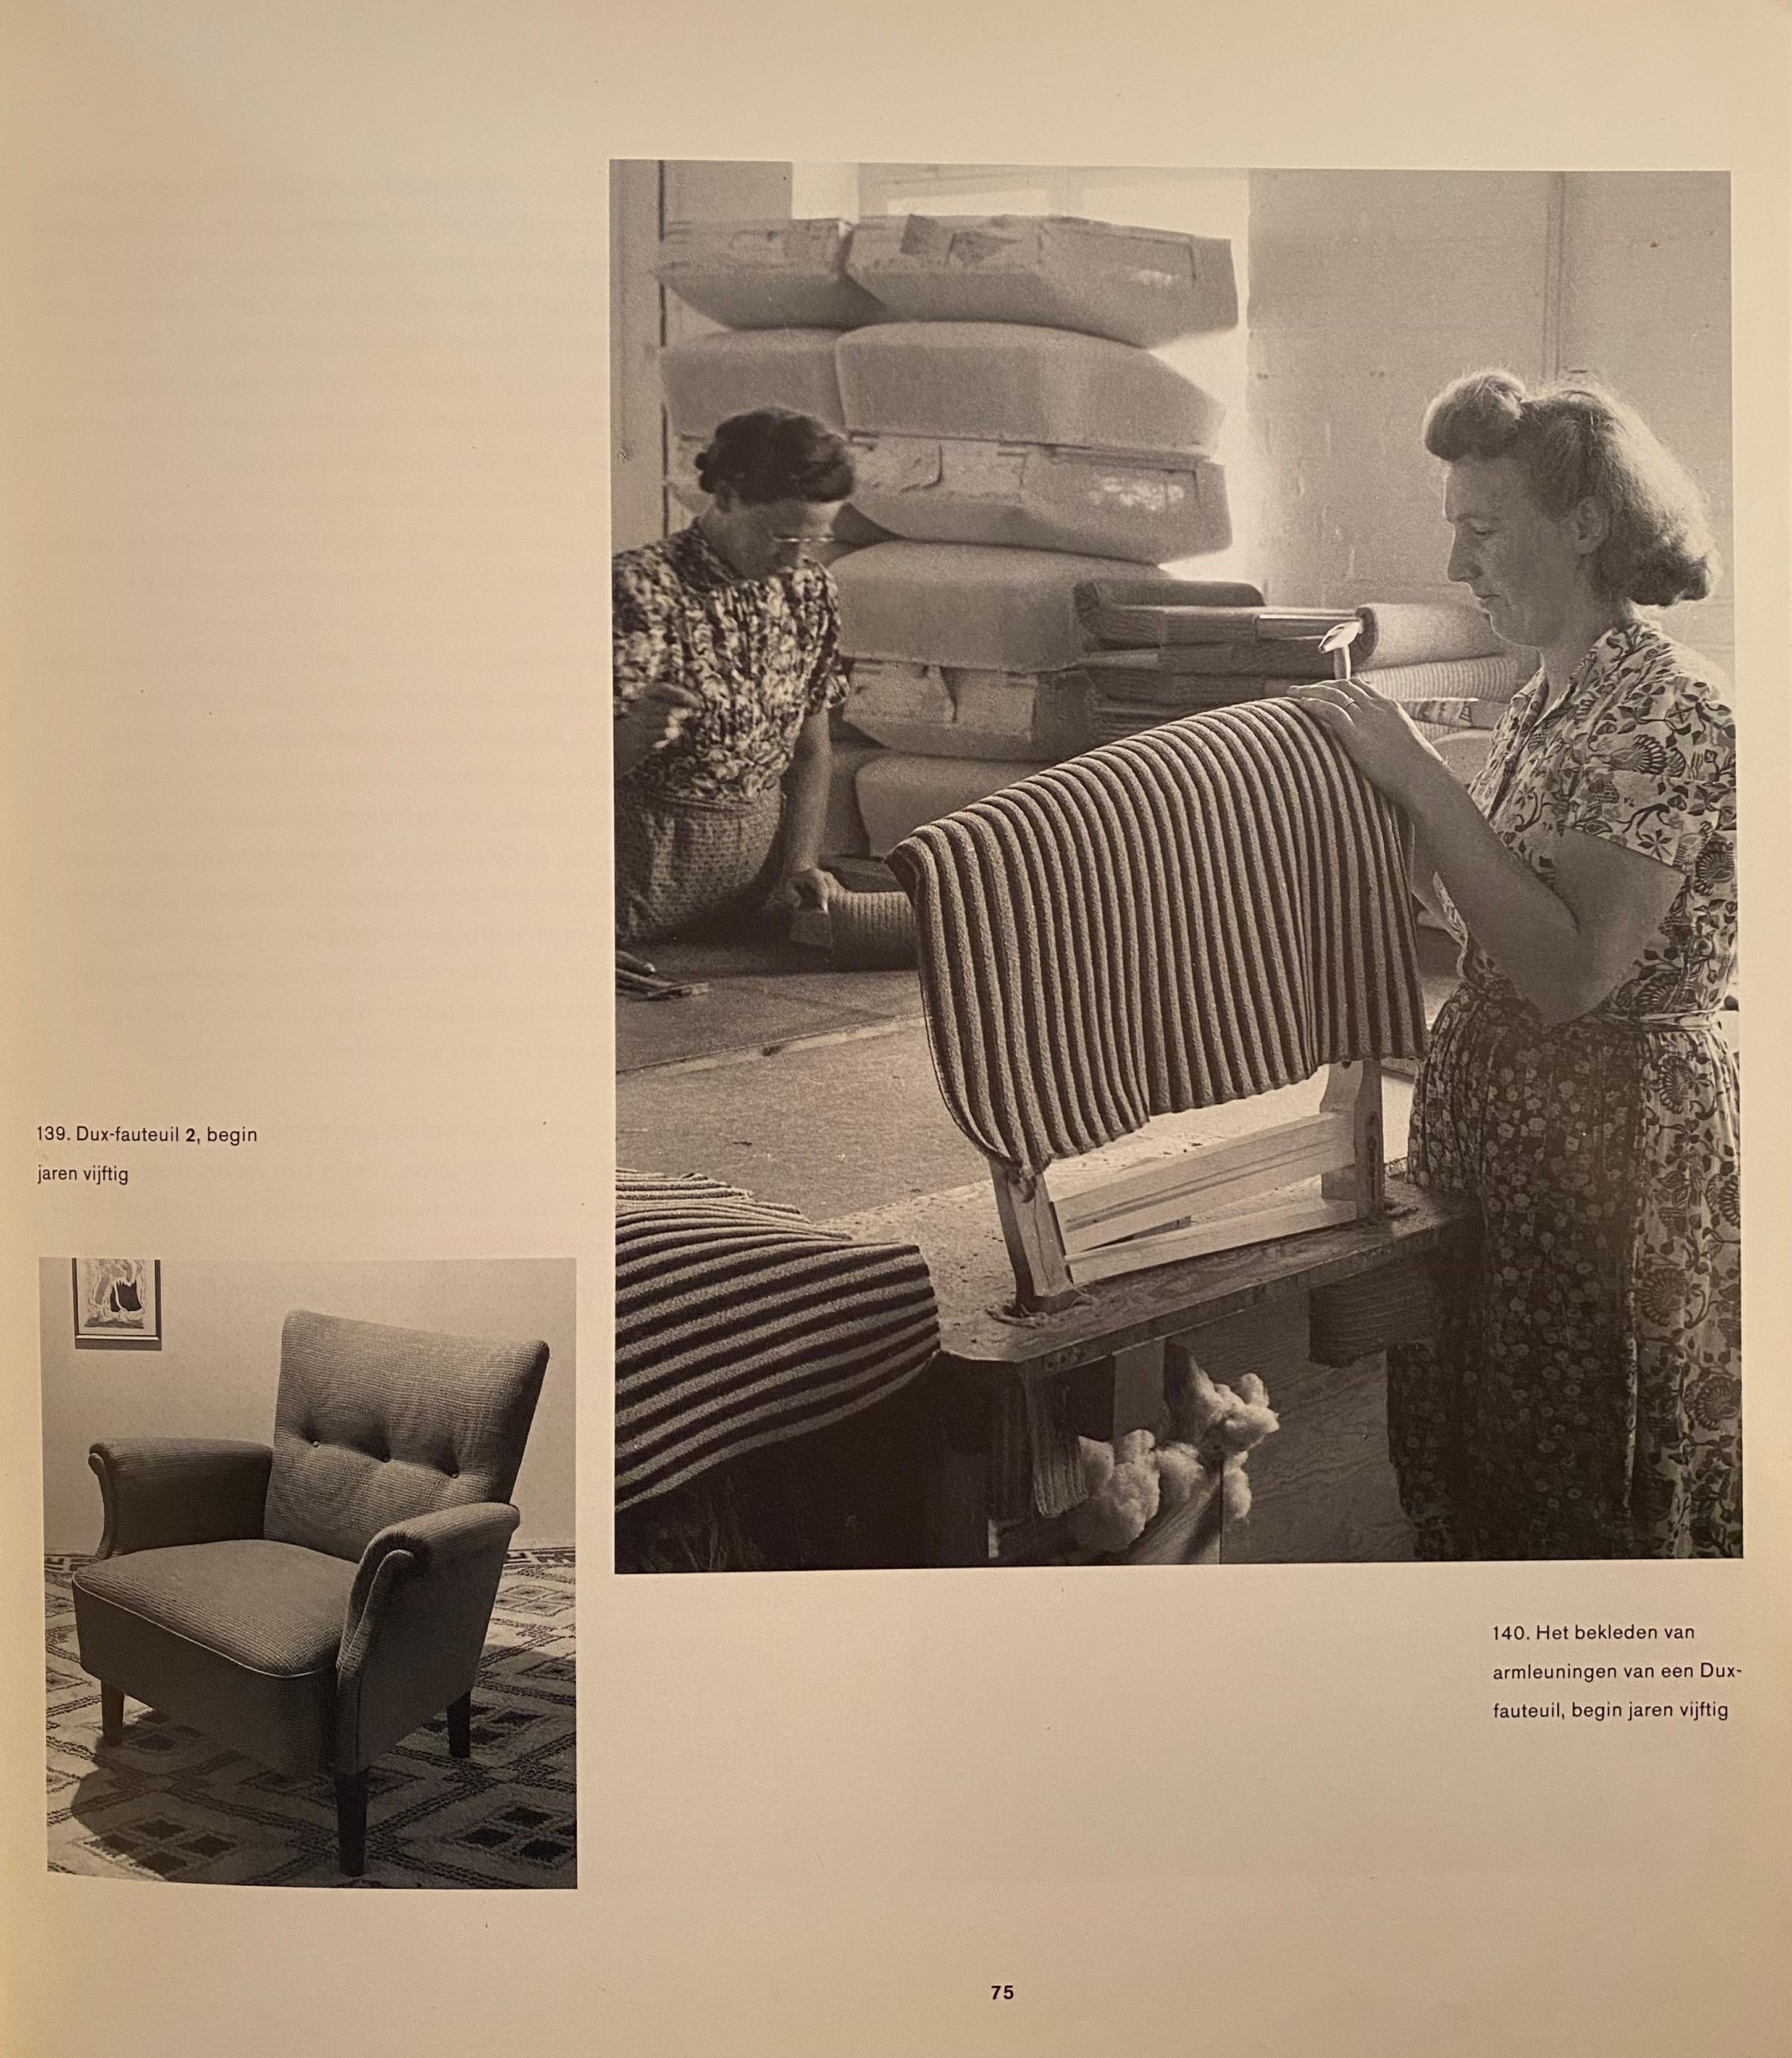 Paar Loungesessel des schwedischen Herstellers DUX, vertrieben von Artifort in den Niederlanden 1955

Diese Loungesessel waren 1955 das Spitzenmodell von Artifort, handgefertigt in Schweden und gepolstert in den Niederlanden bei Artifort mit den